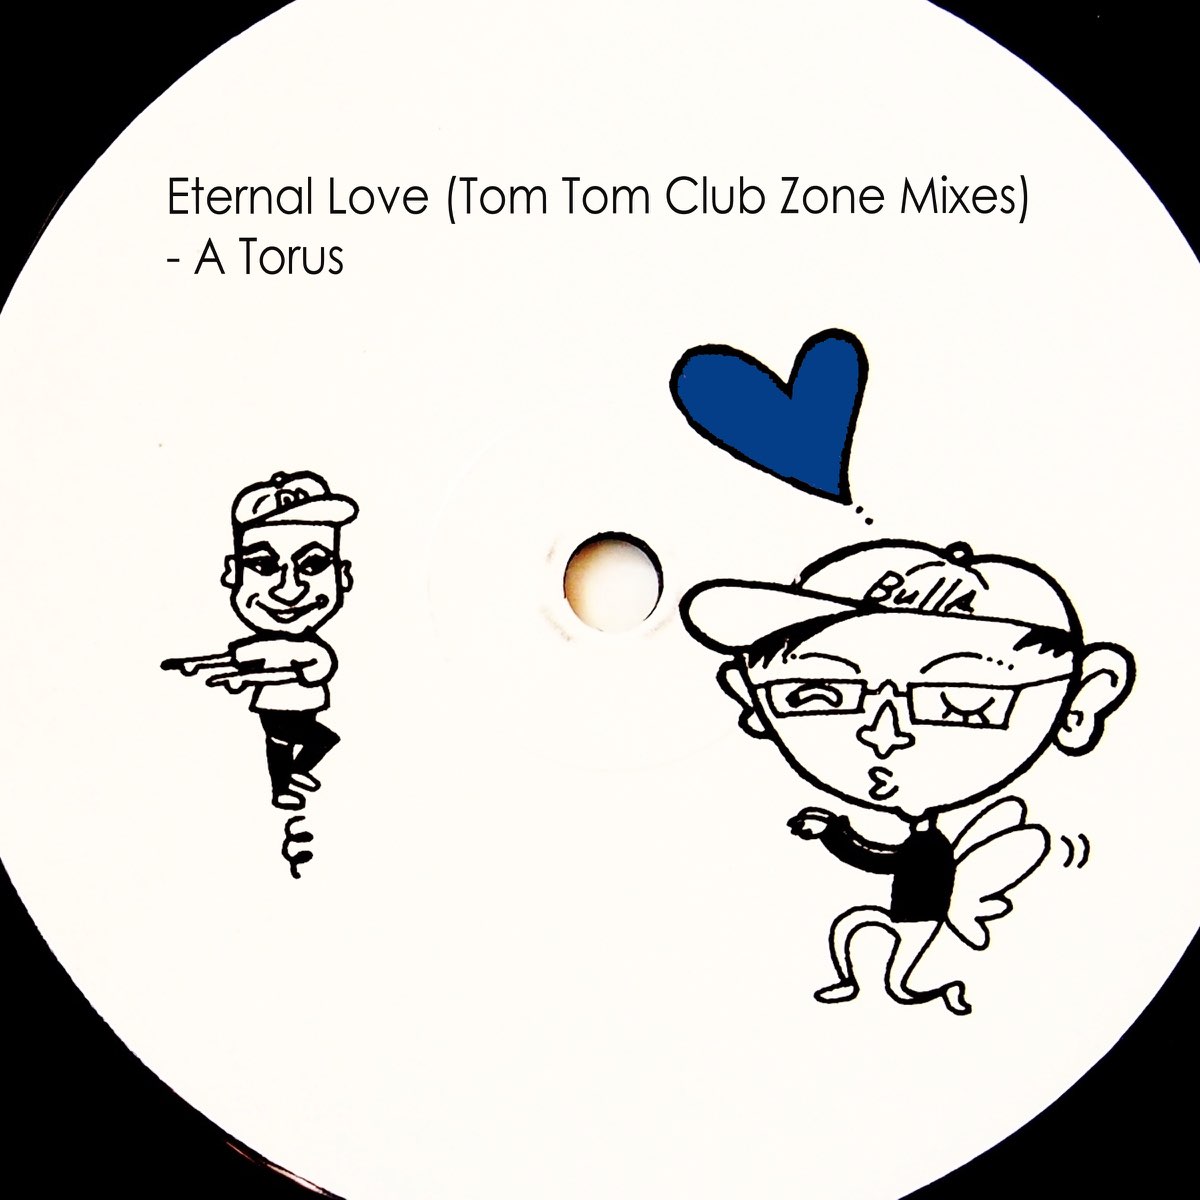 Tom Tom Club Tom Tom Club.